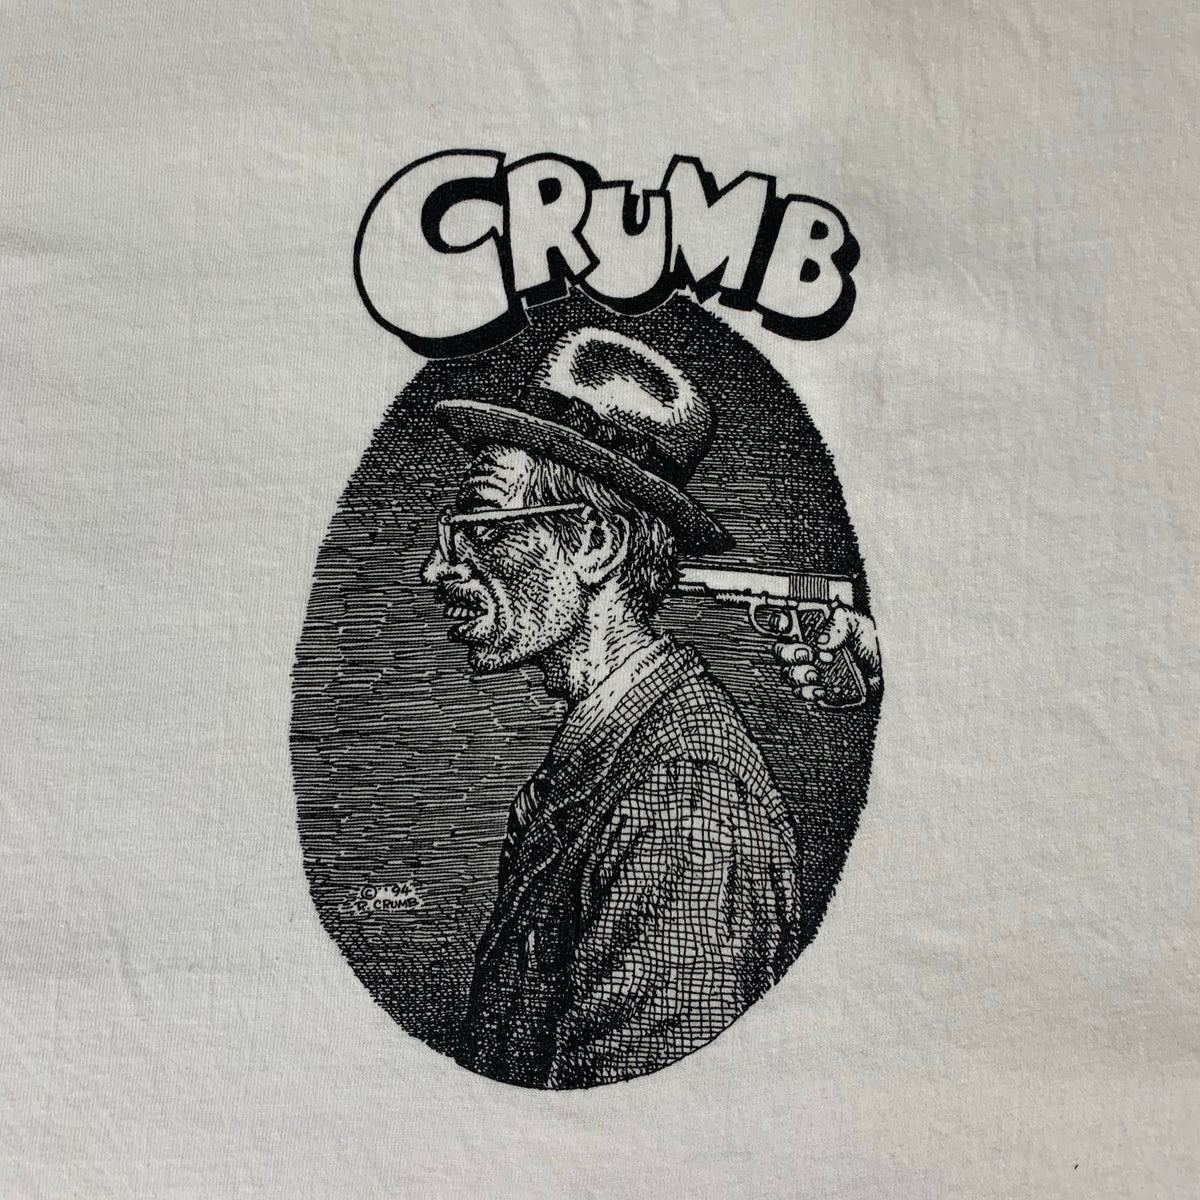 Vintage Robert Crumb “Crumb” T-Shirt